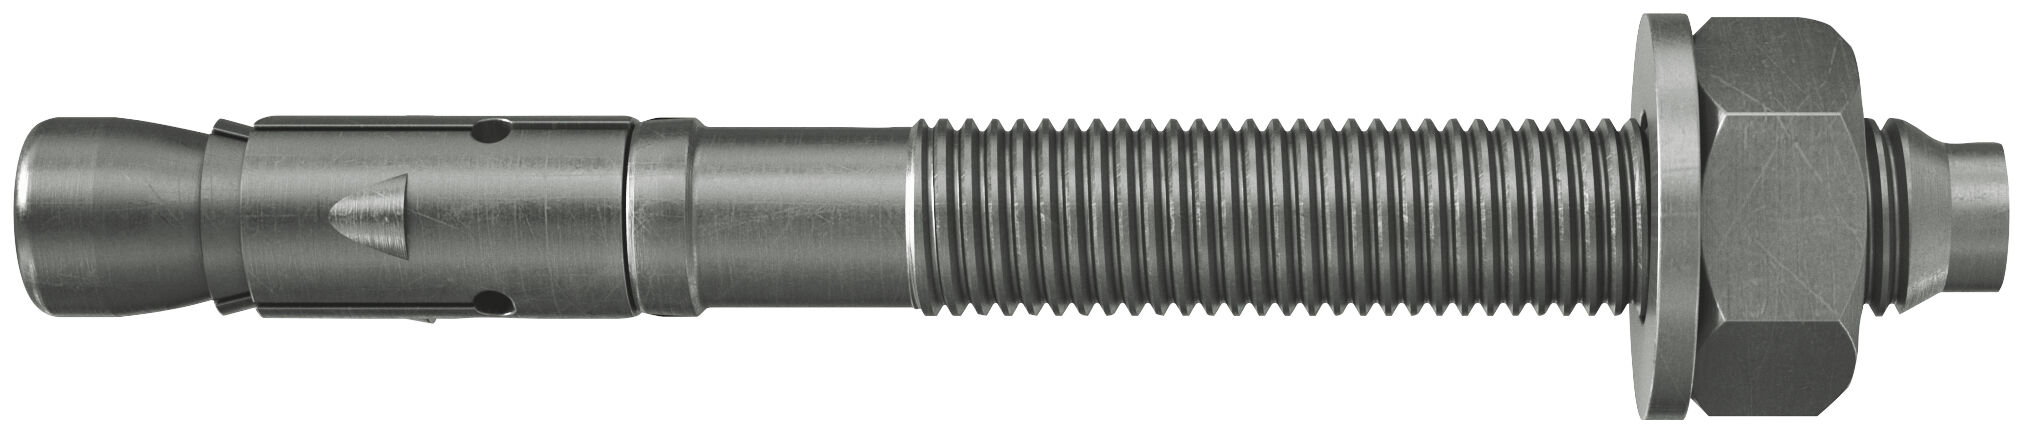 fischer bolt anchor FAZ II 8/10 R stainless steel